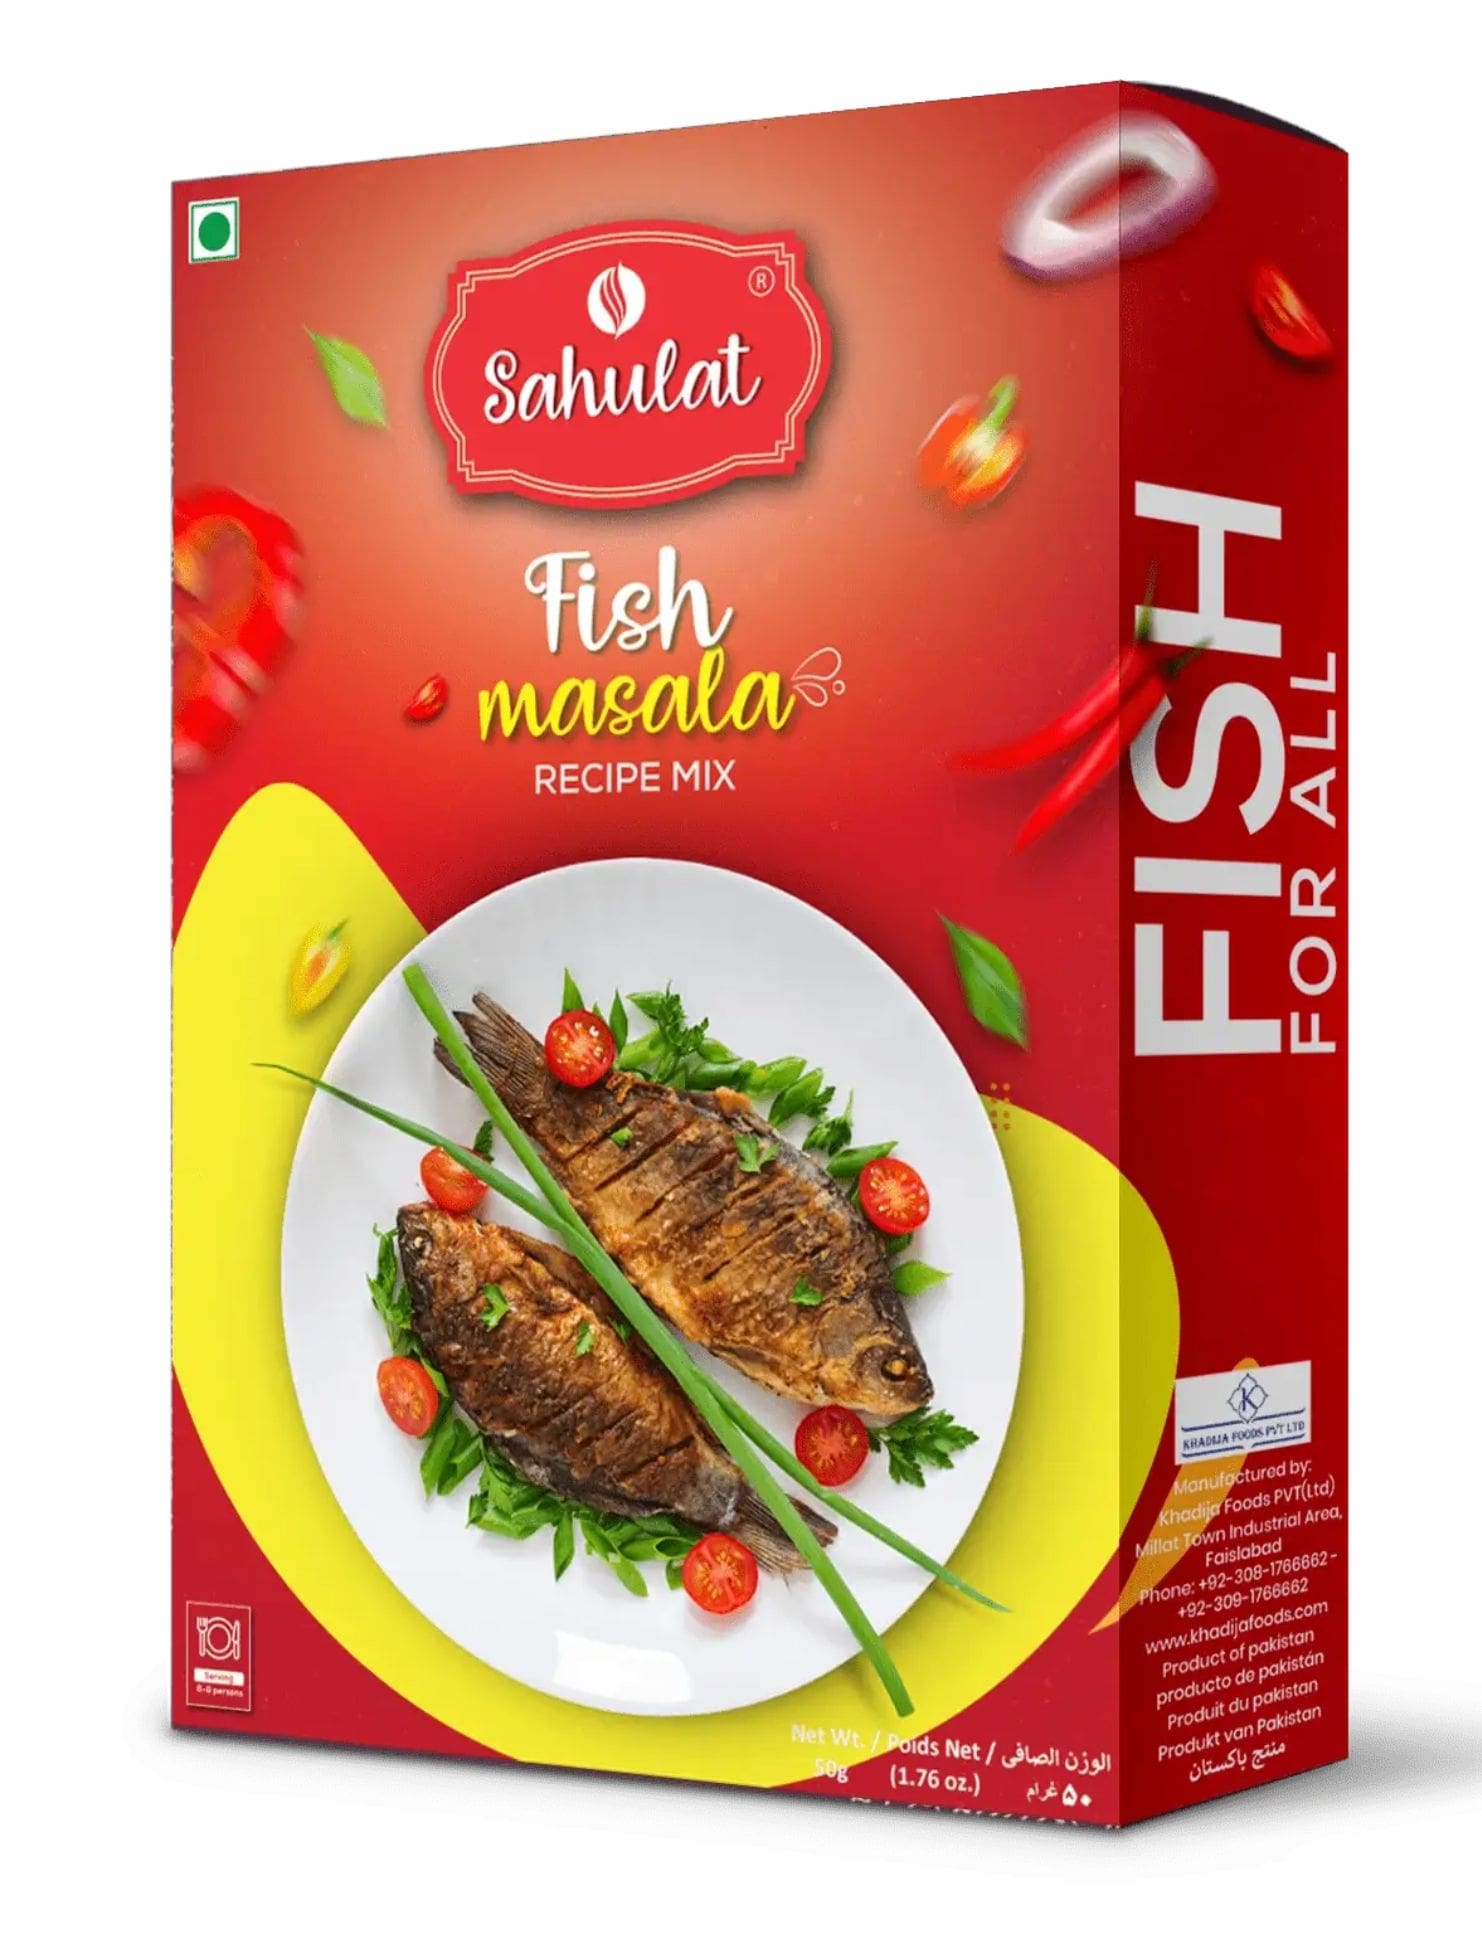 fishmasala